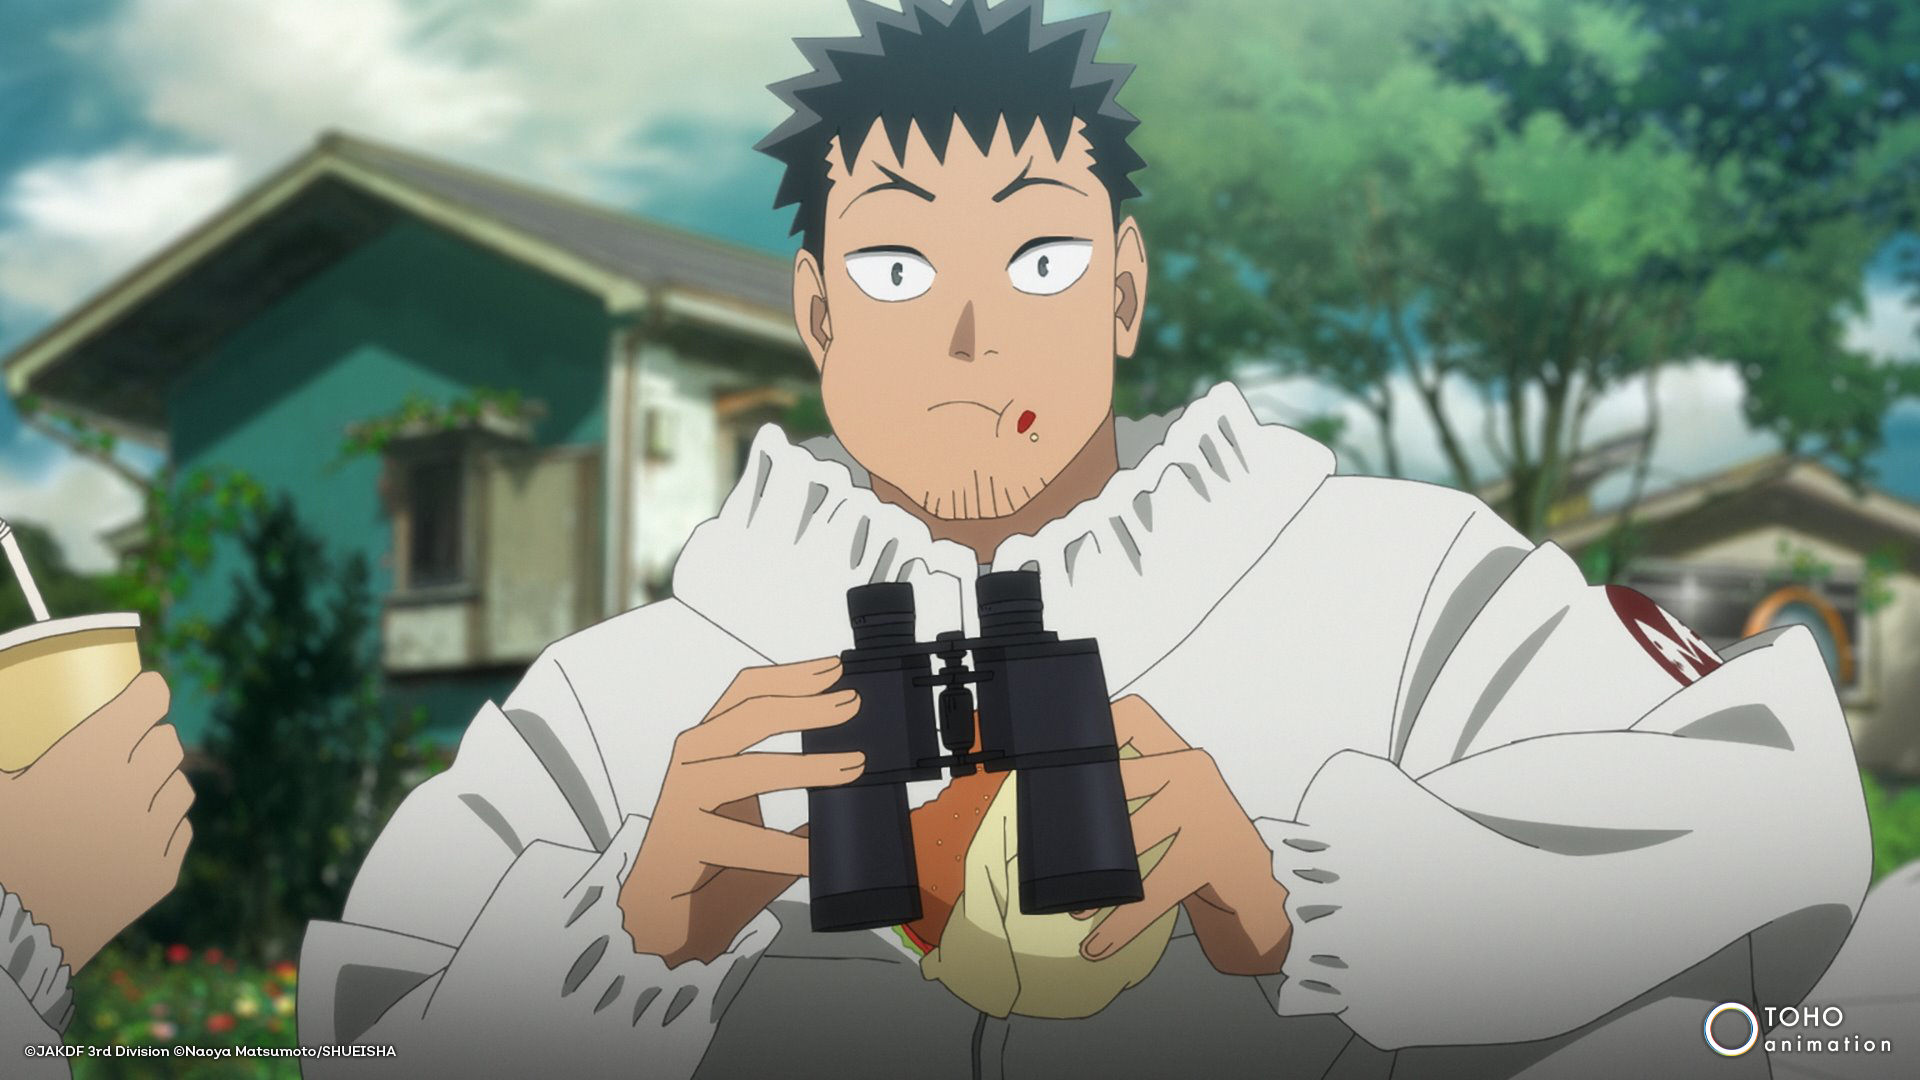 Personaje de anime, Yuji Itadori, sorprendido sosteniendo binoculares y paquete en escenario al aire libre